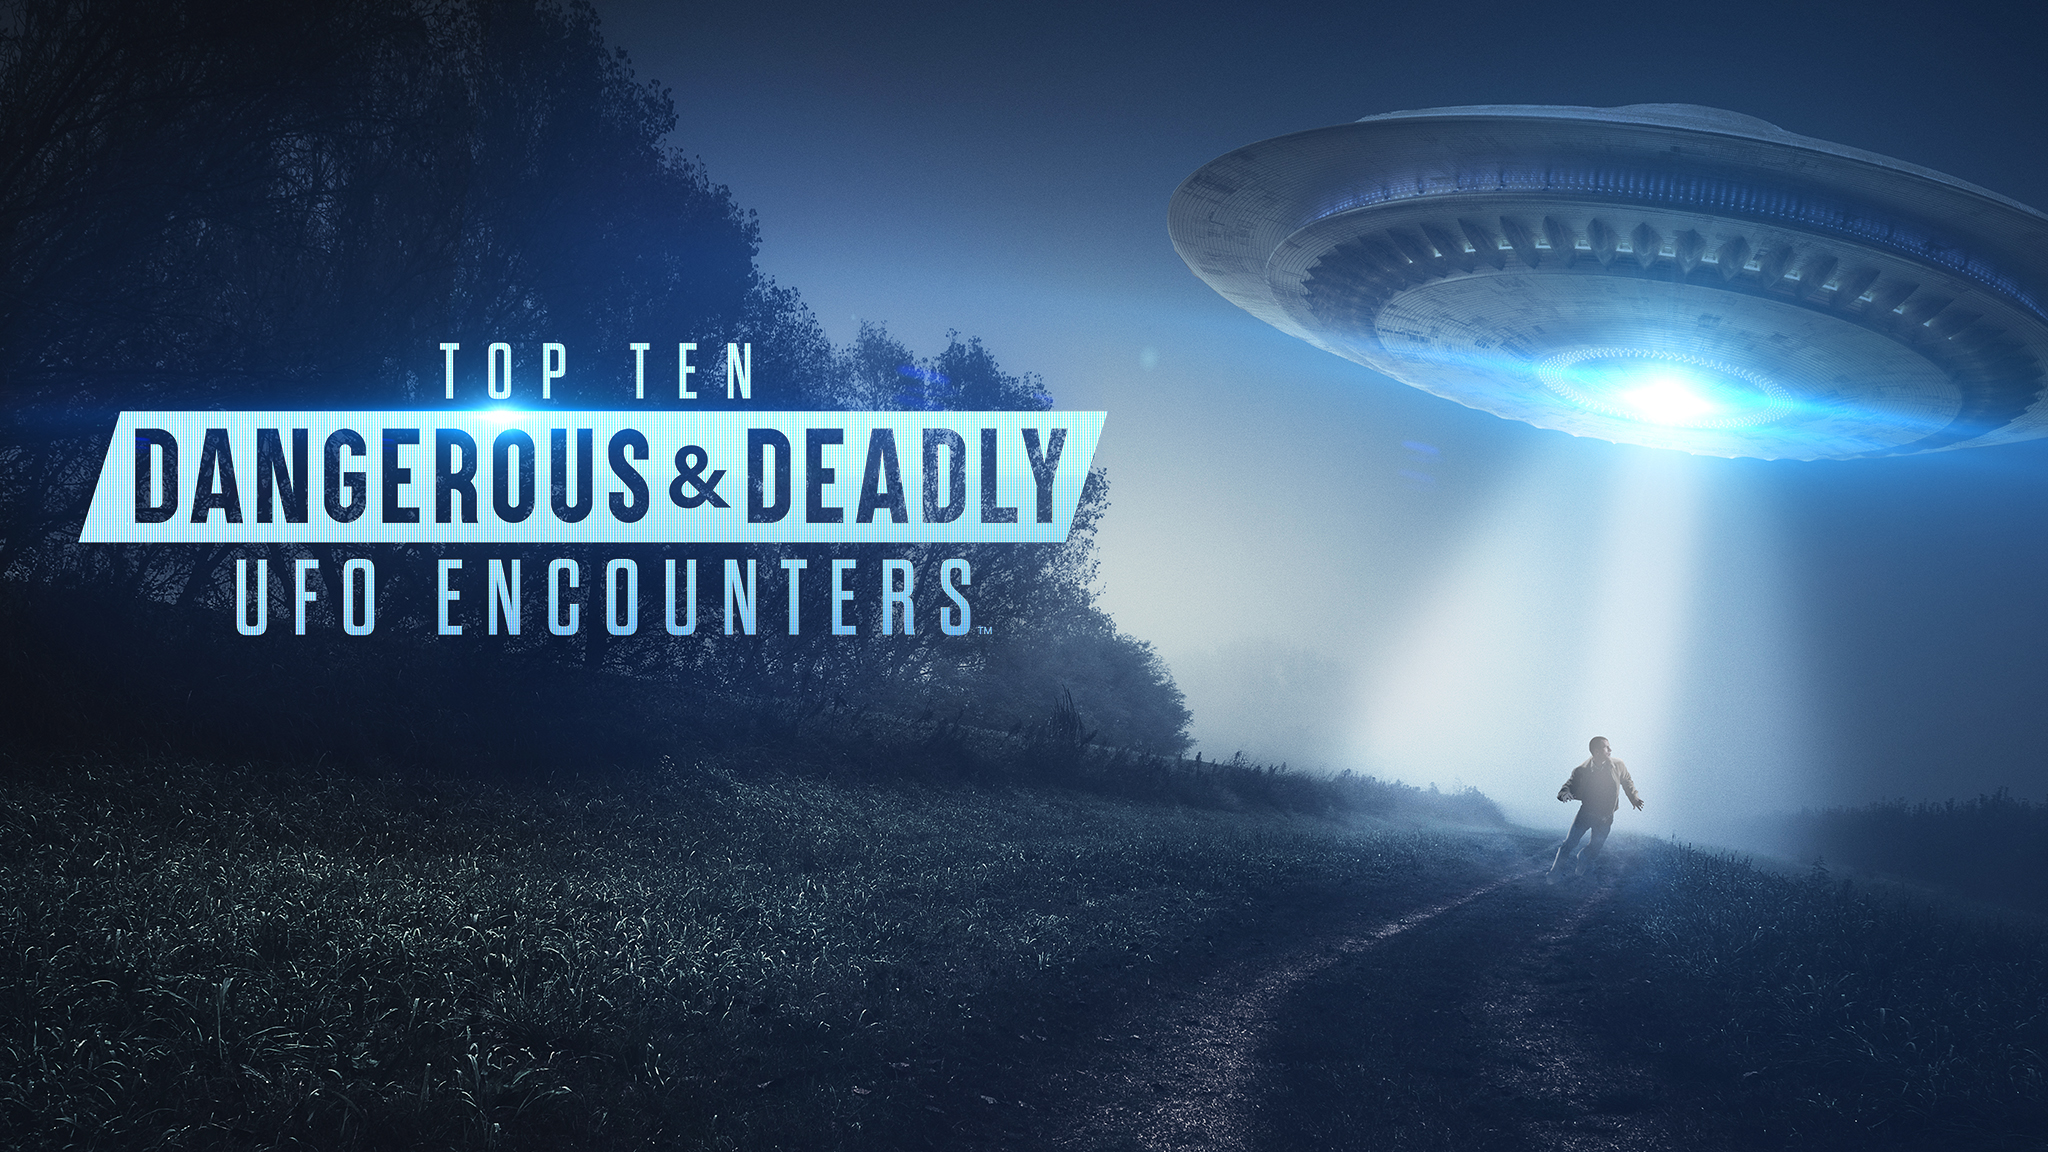 Top Ten Dangerous & Deadly UFO Encounters